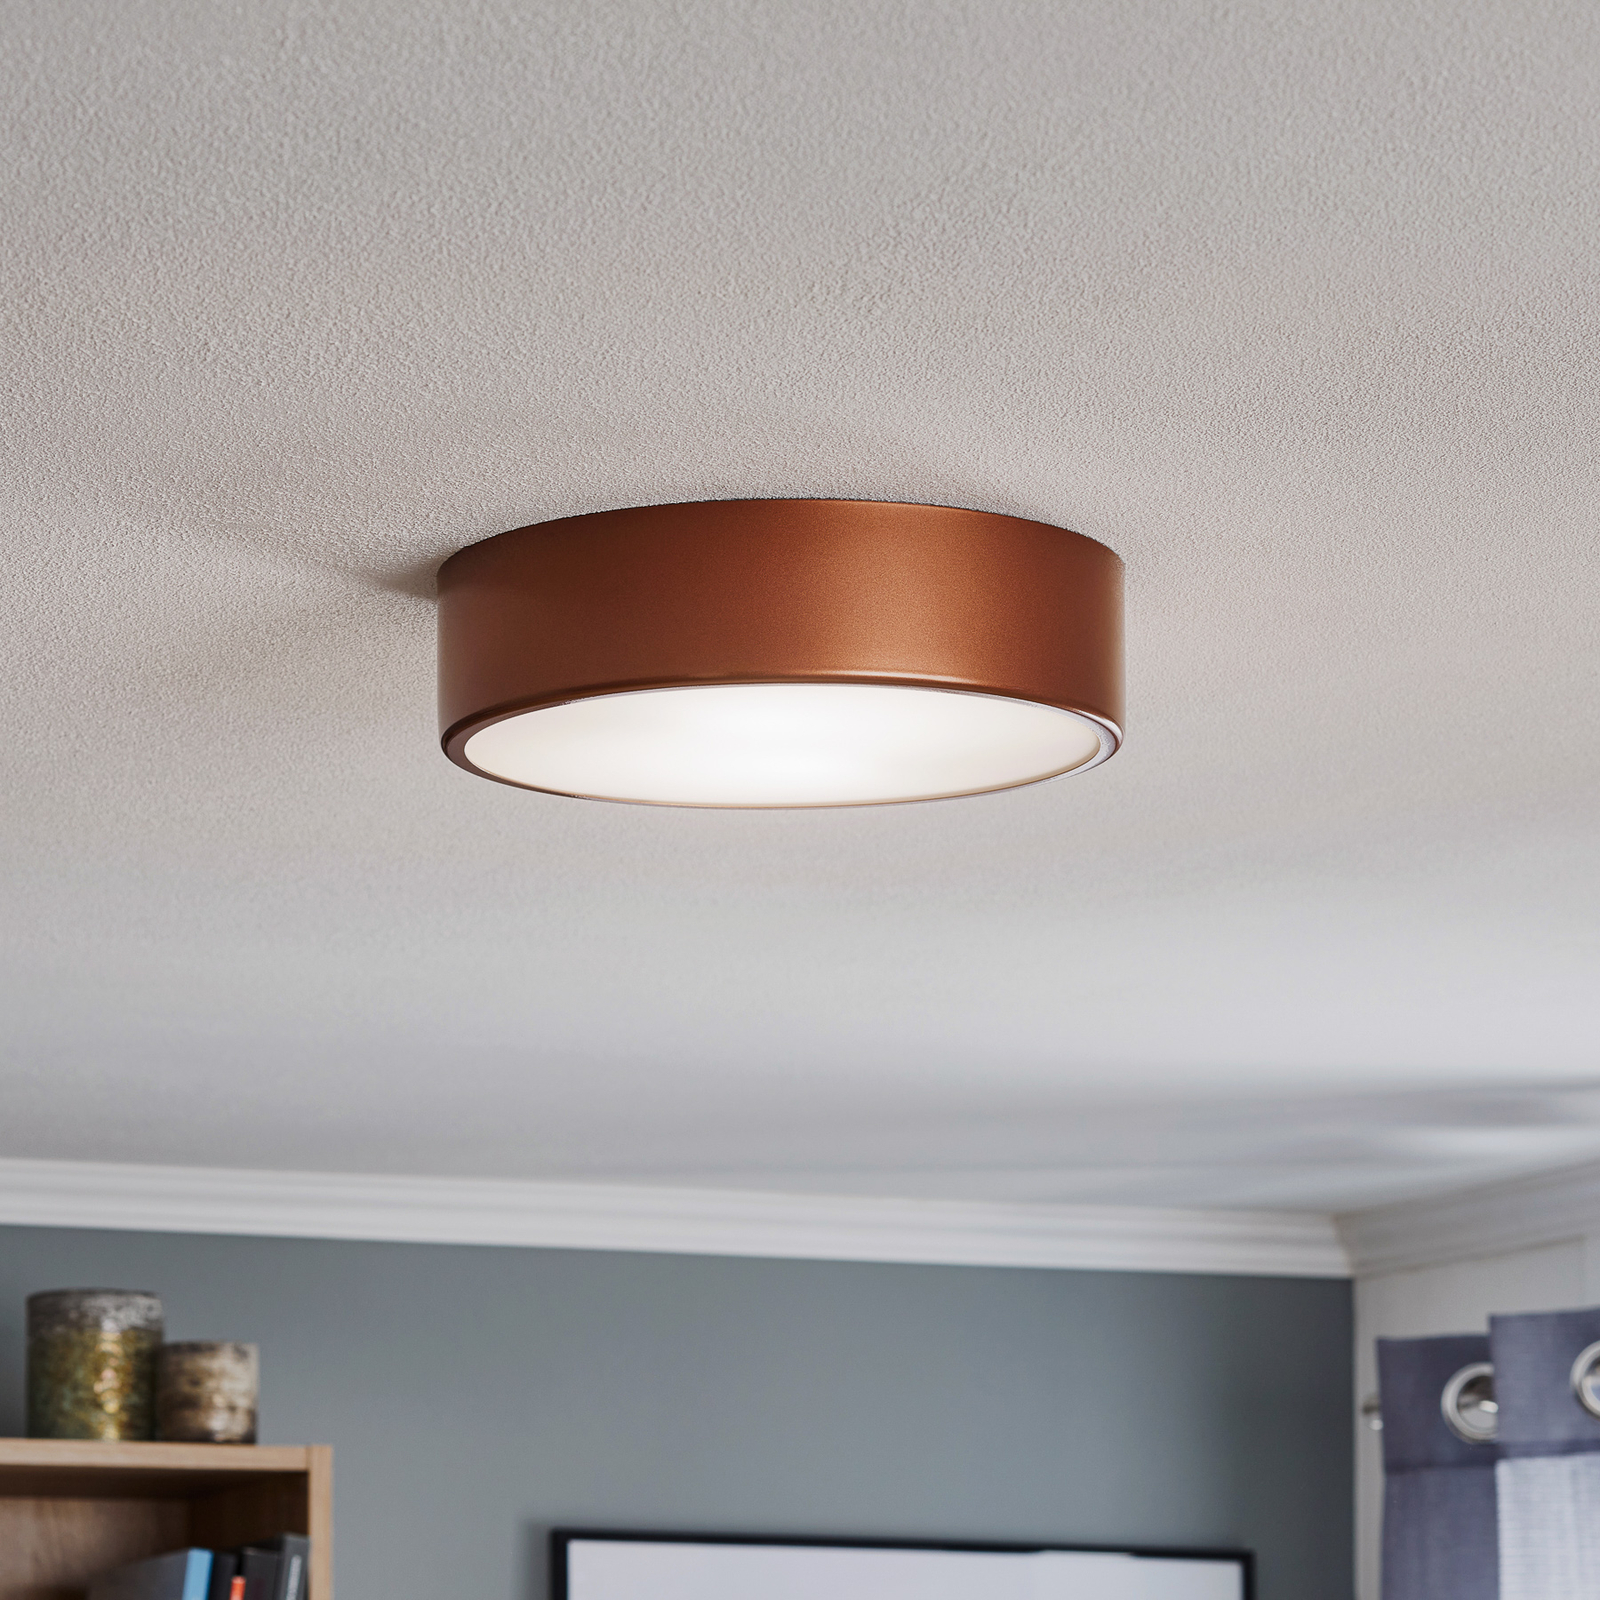 Cleo 300 ceiling light, sensor, Ø 30 cm copper